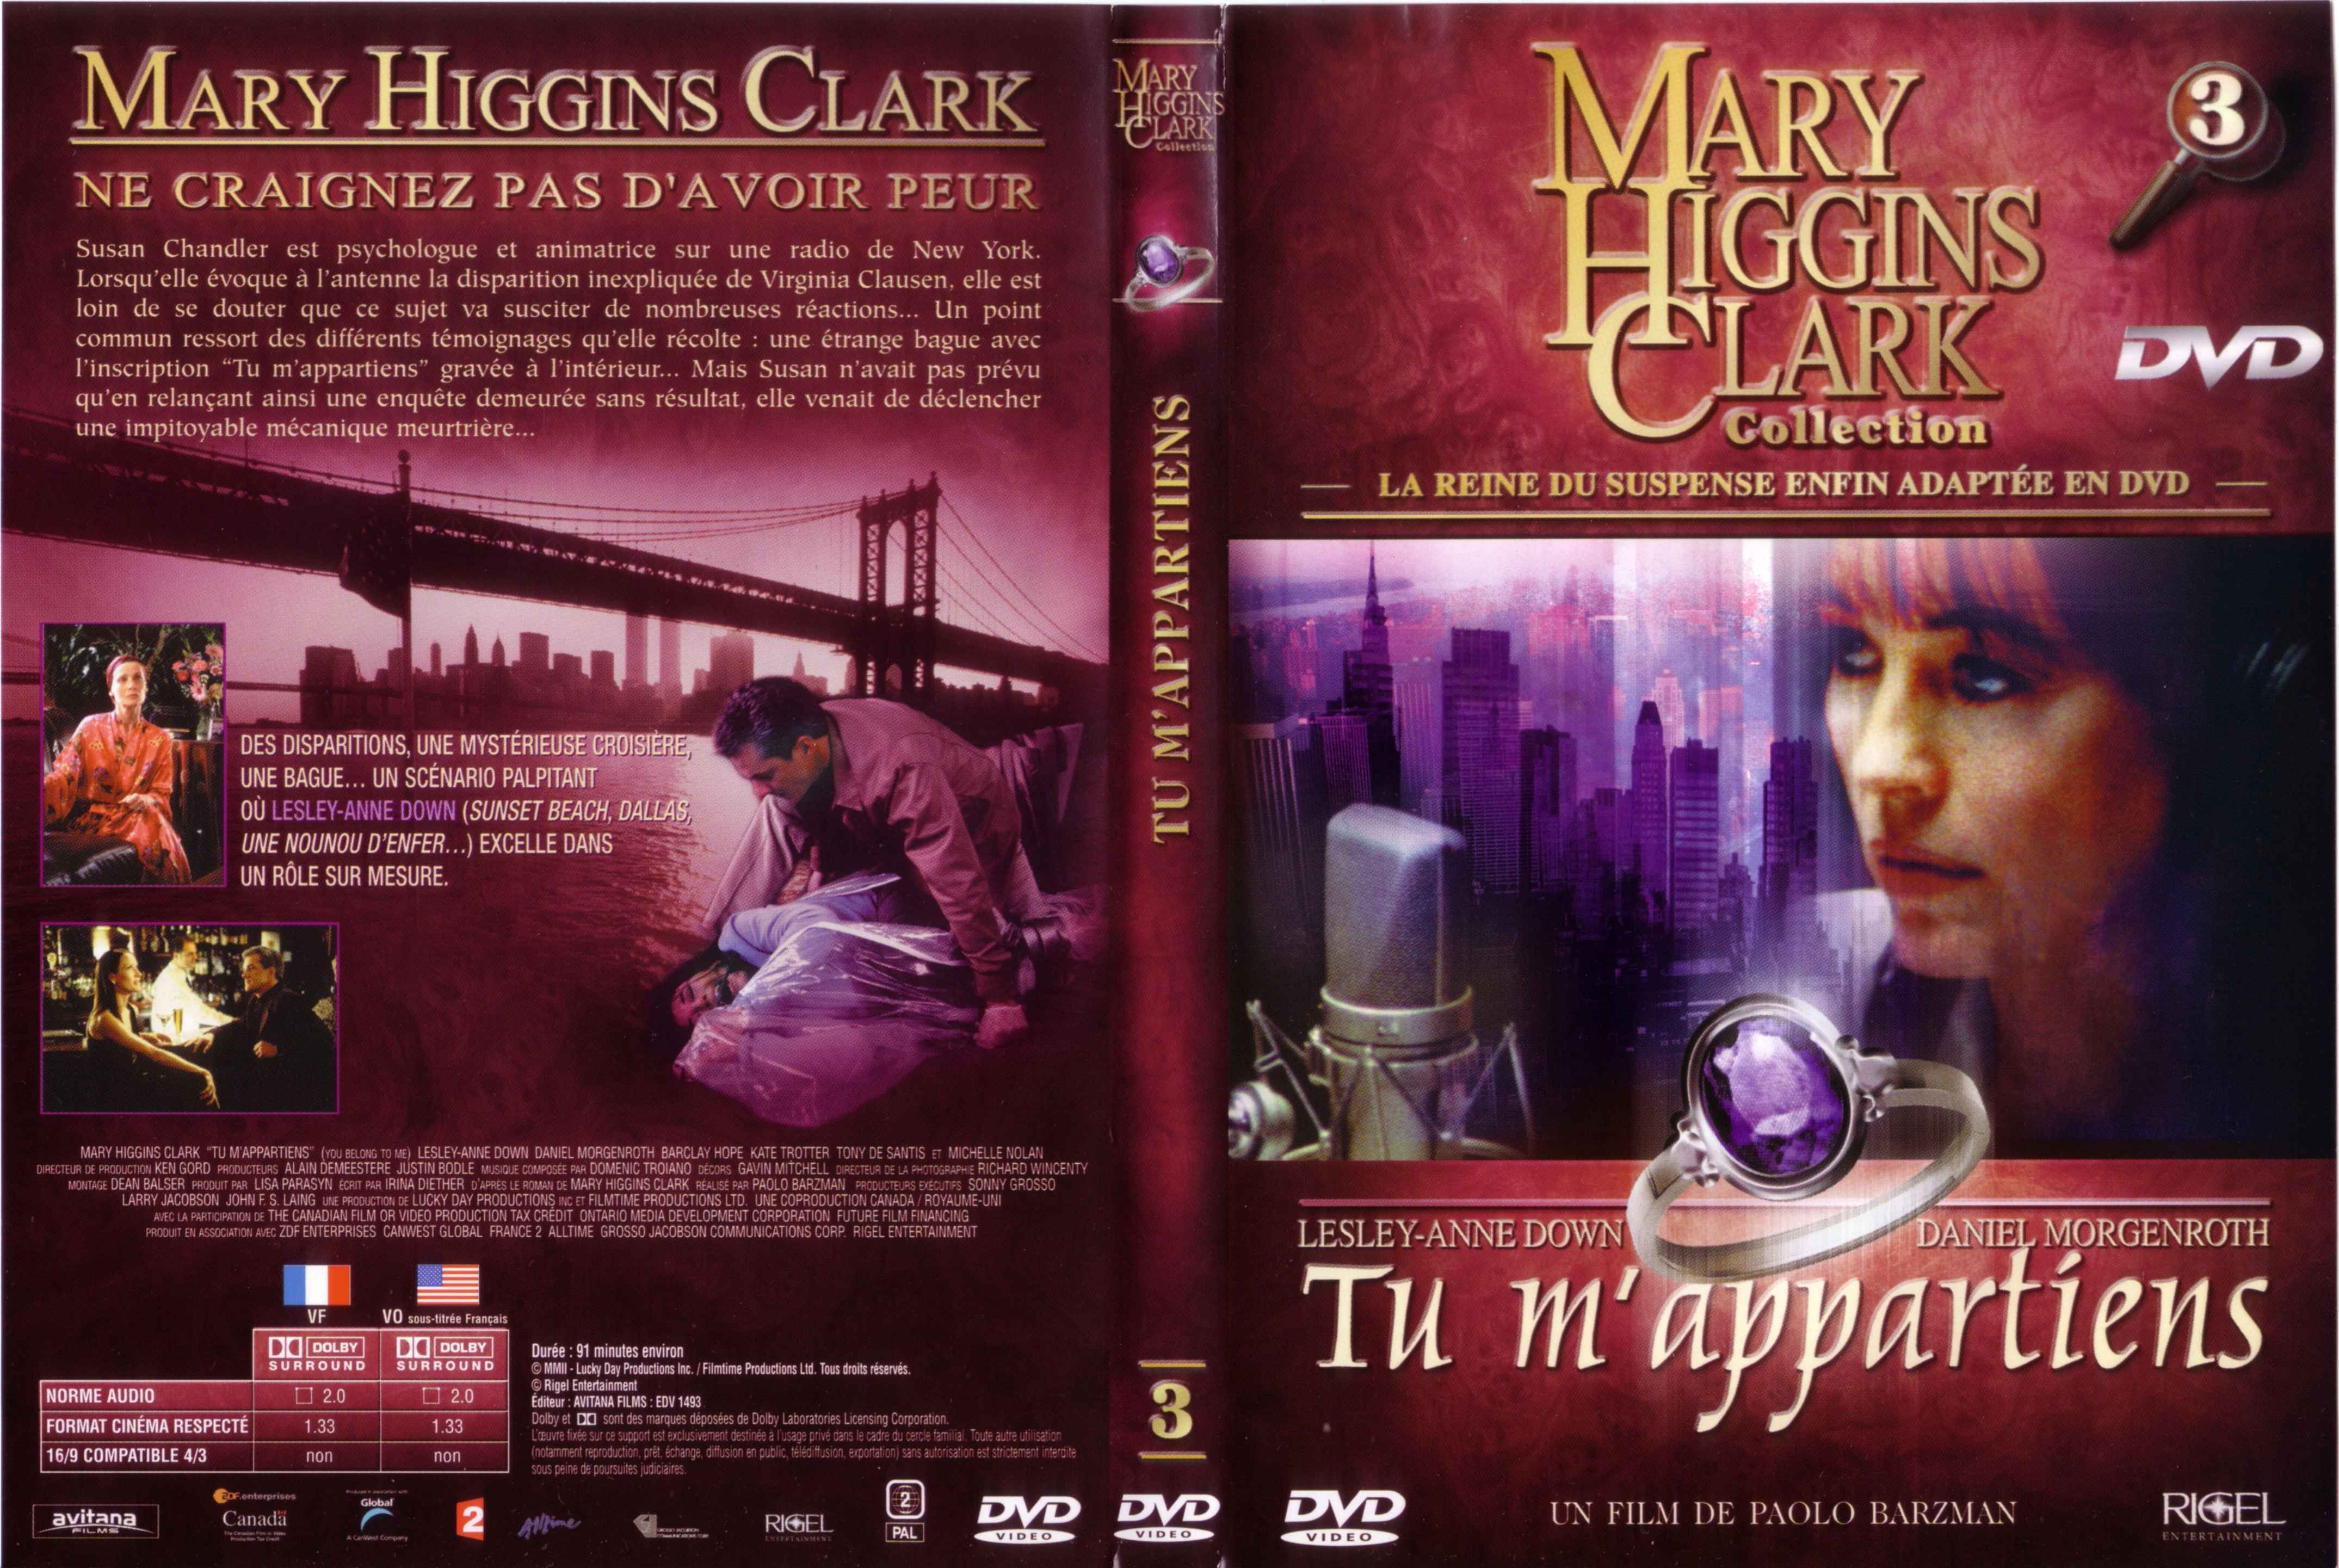 Jaquette DVD de Mary Higgins Clark vol 03 - Tu m'appartiens - Cinéma Passion